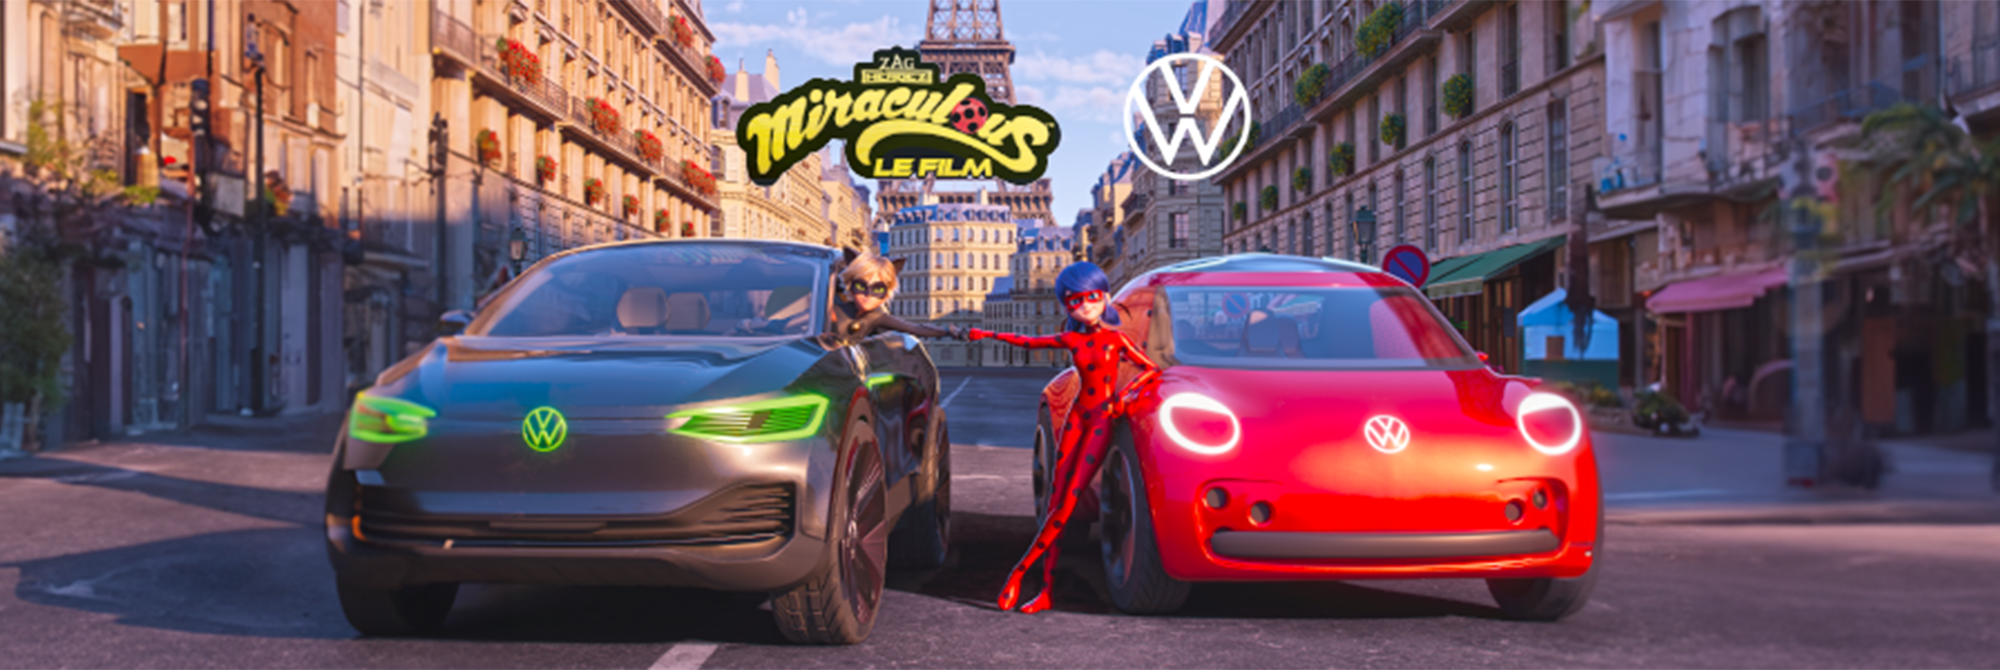 Volkswagen Paris 13 - La Magie Miraculous s'invite chez Volkswagen